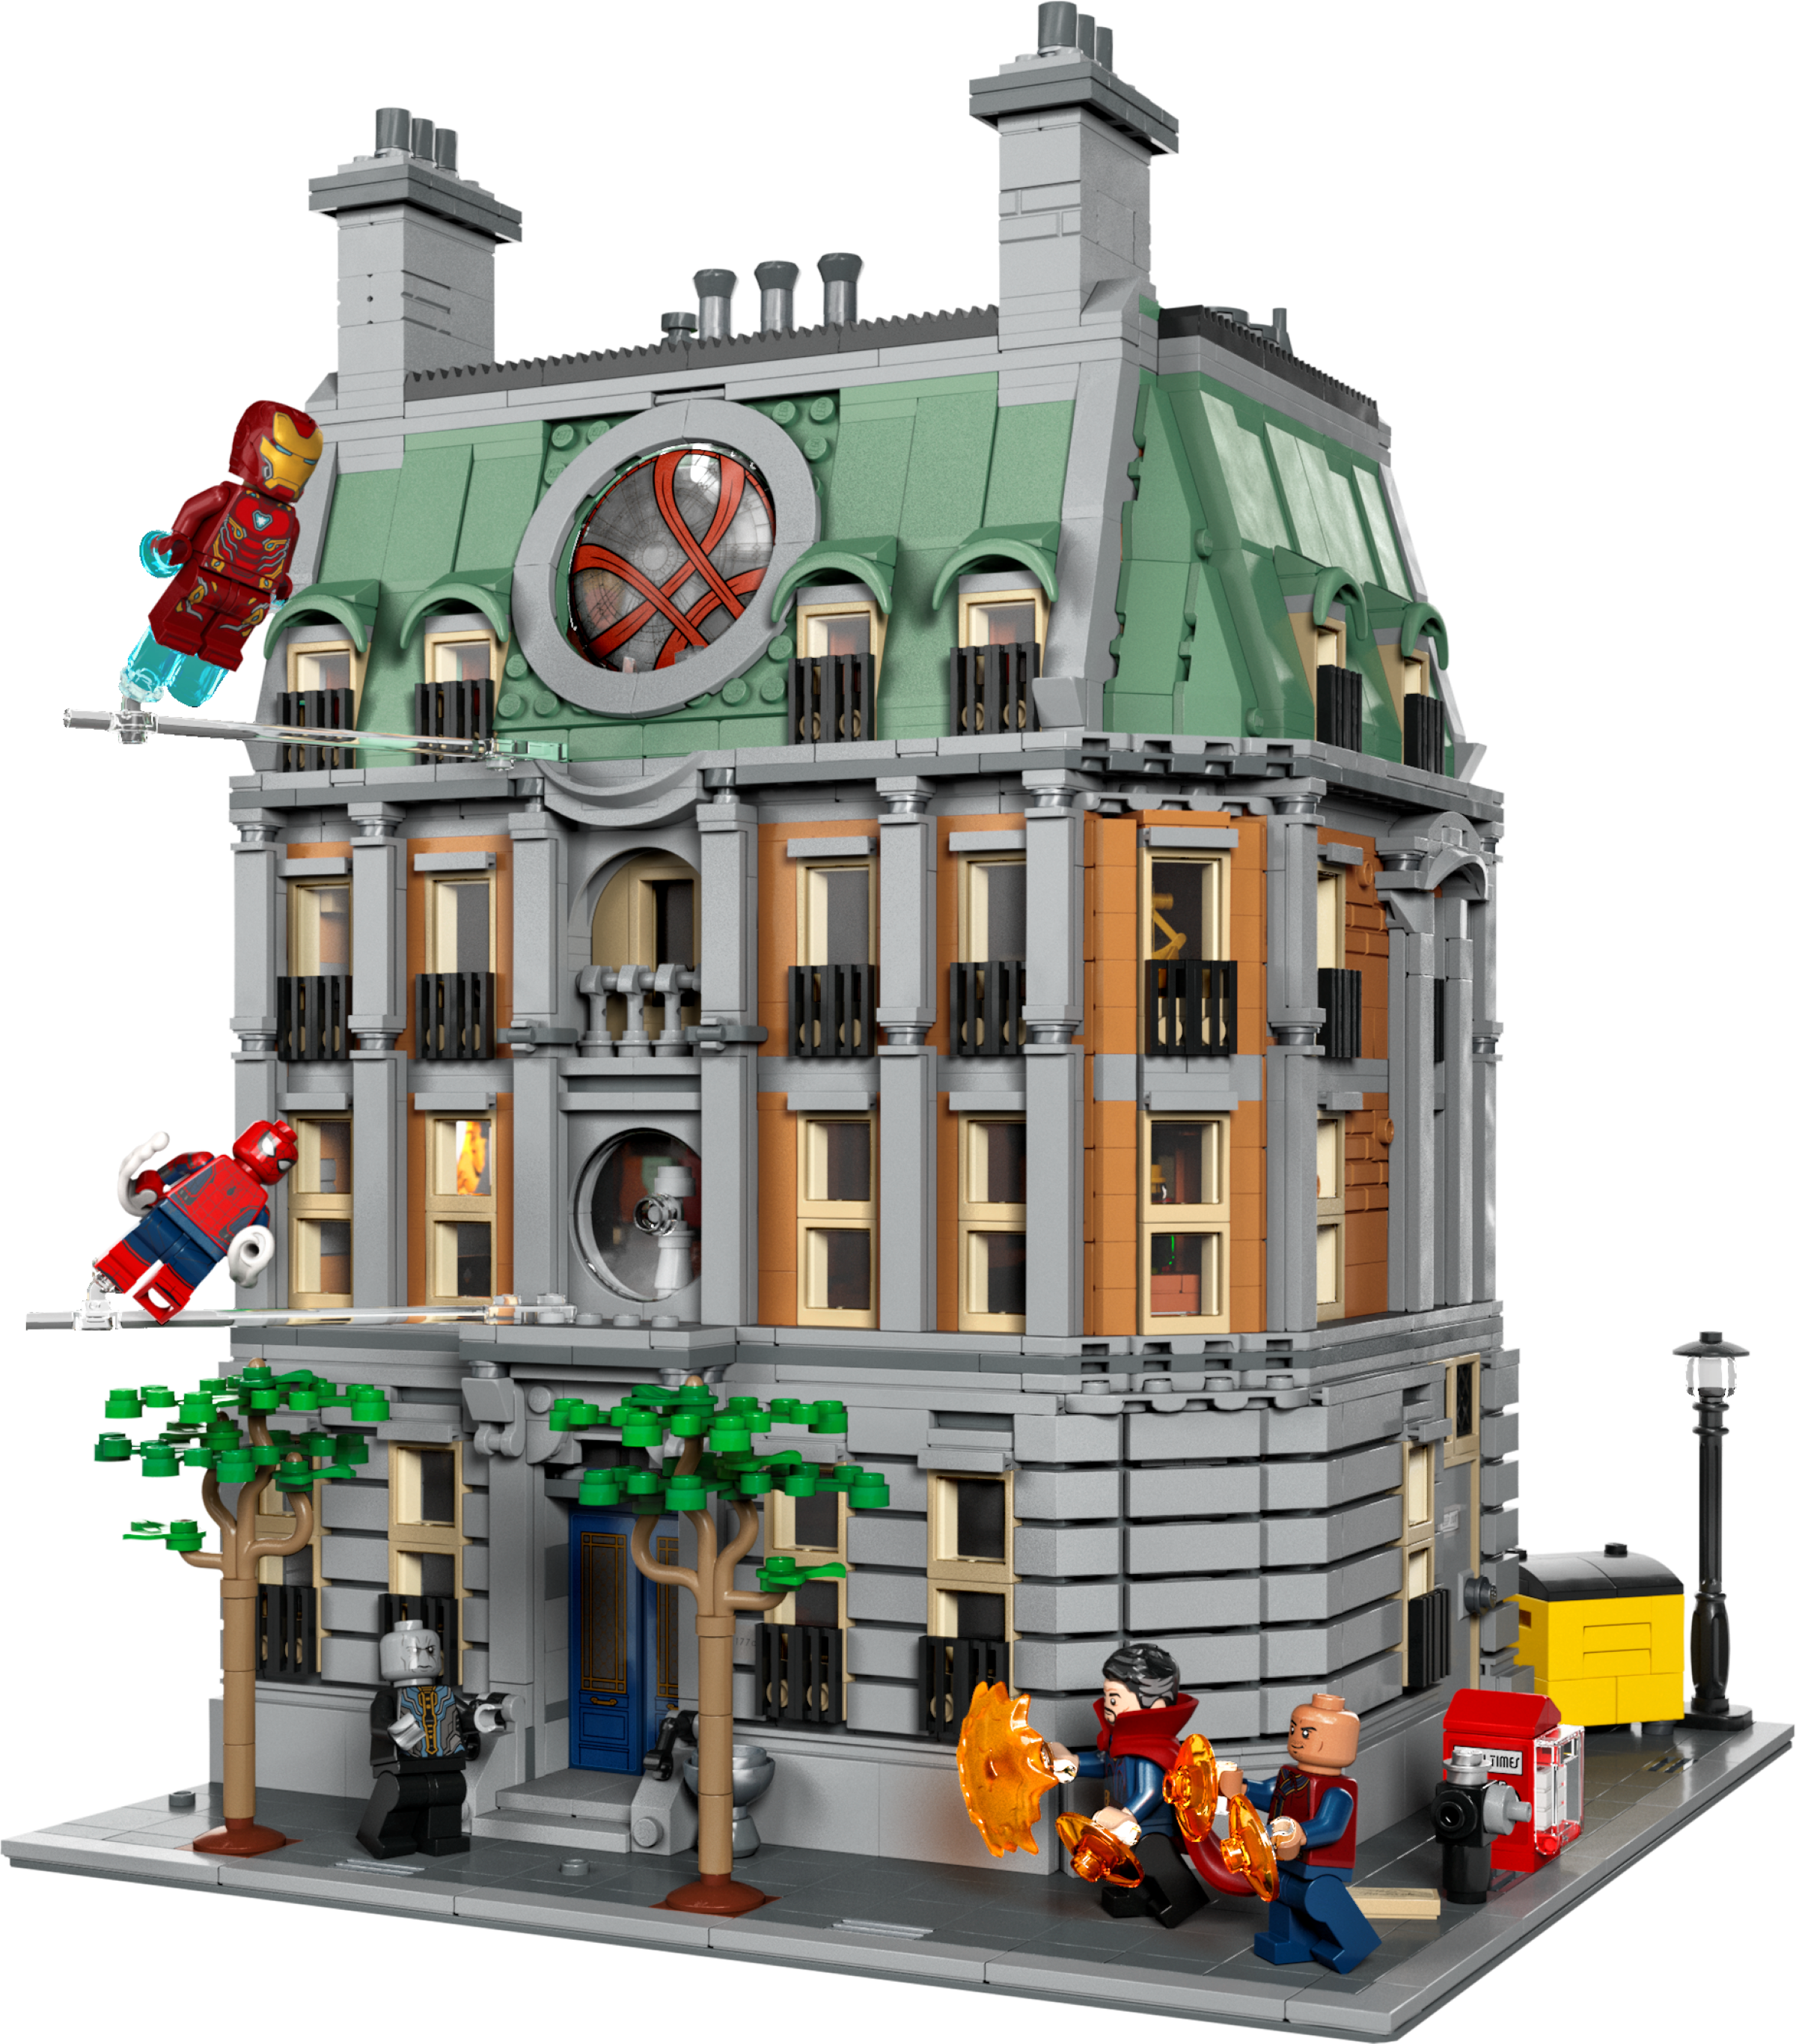 LEGO 76218 Marvel Le Saint des Saints, Kit de Construction de